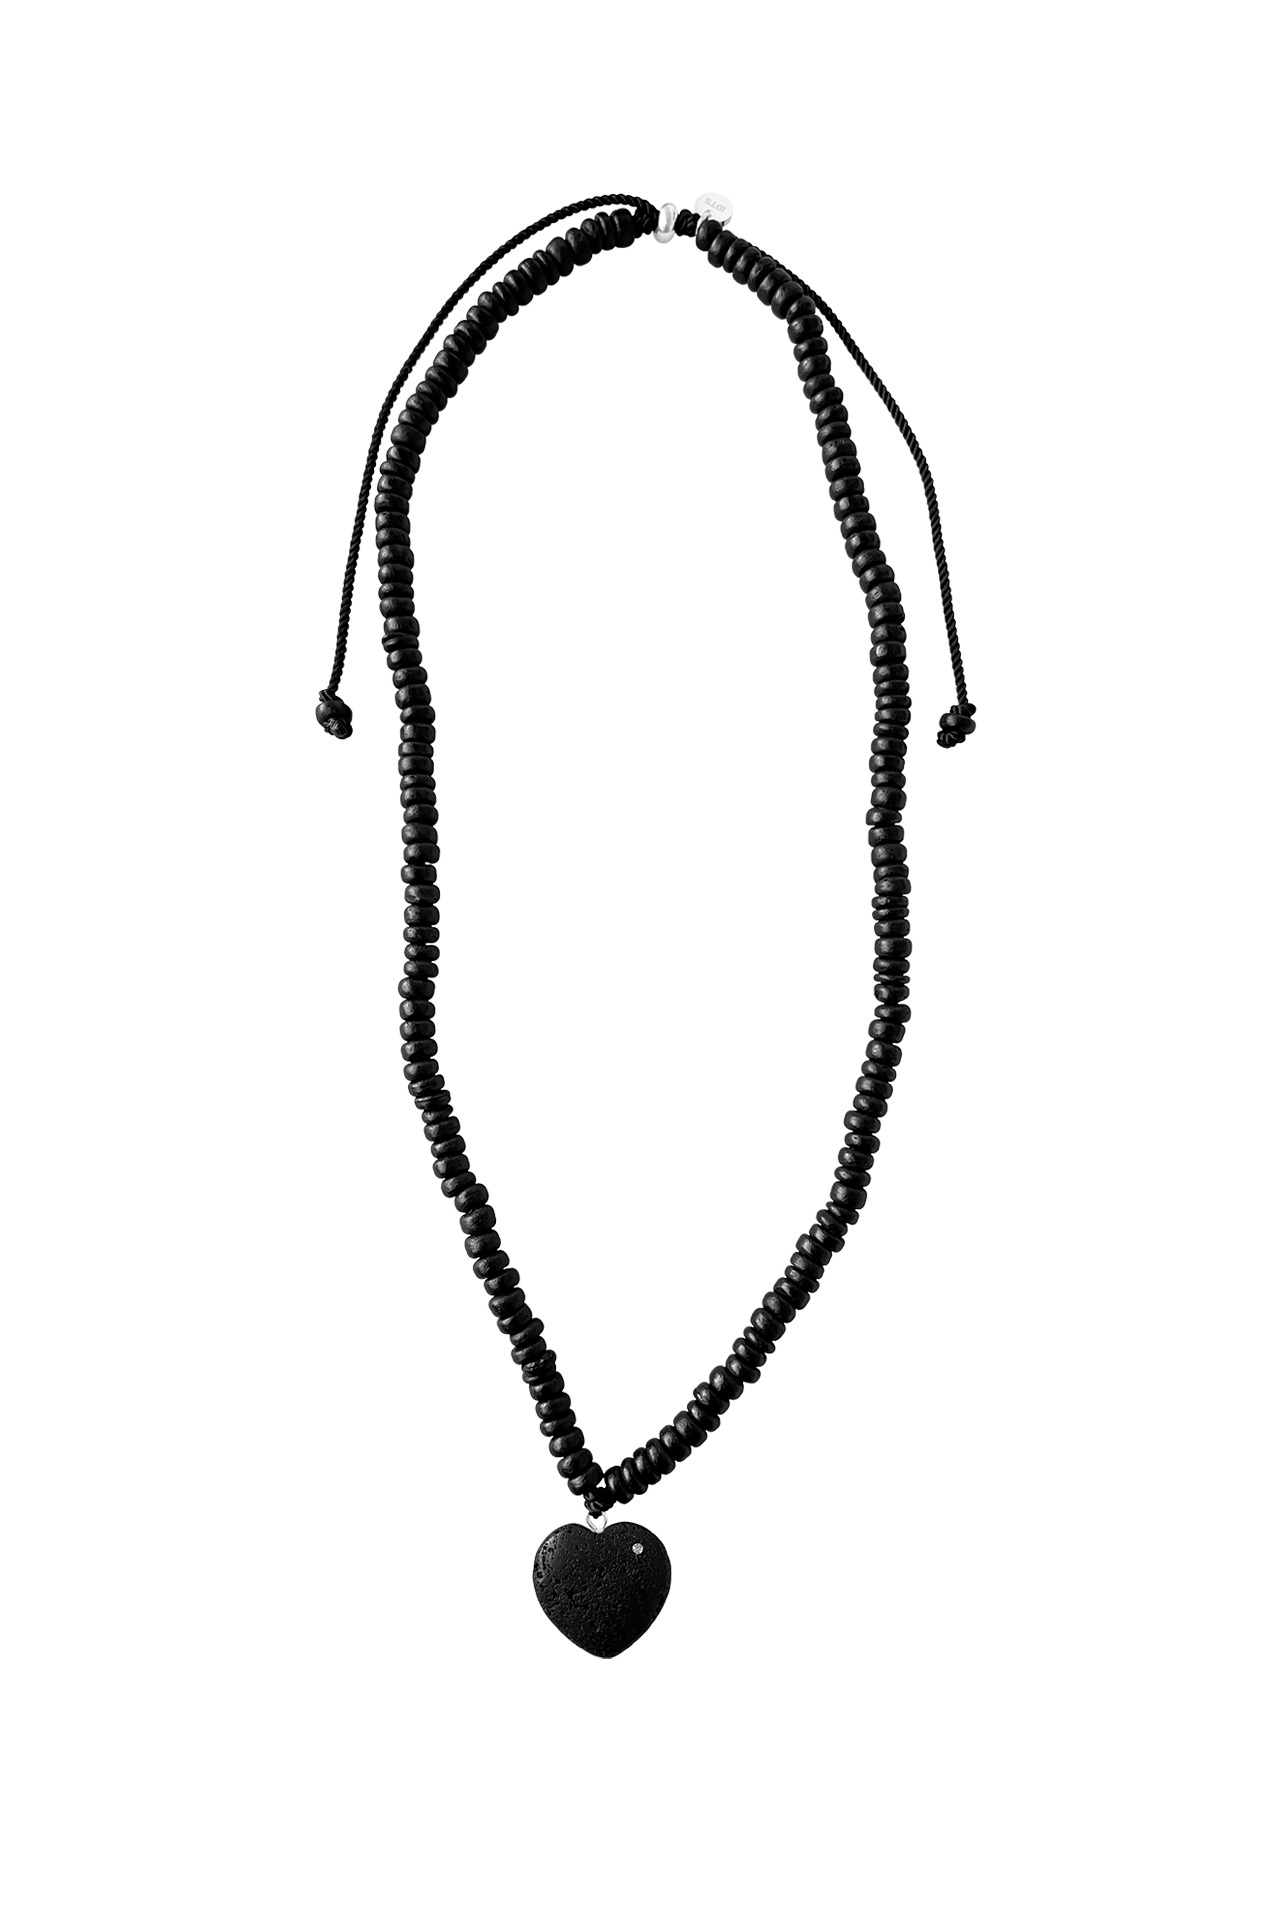 Dark Heart Necklace